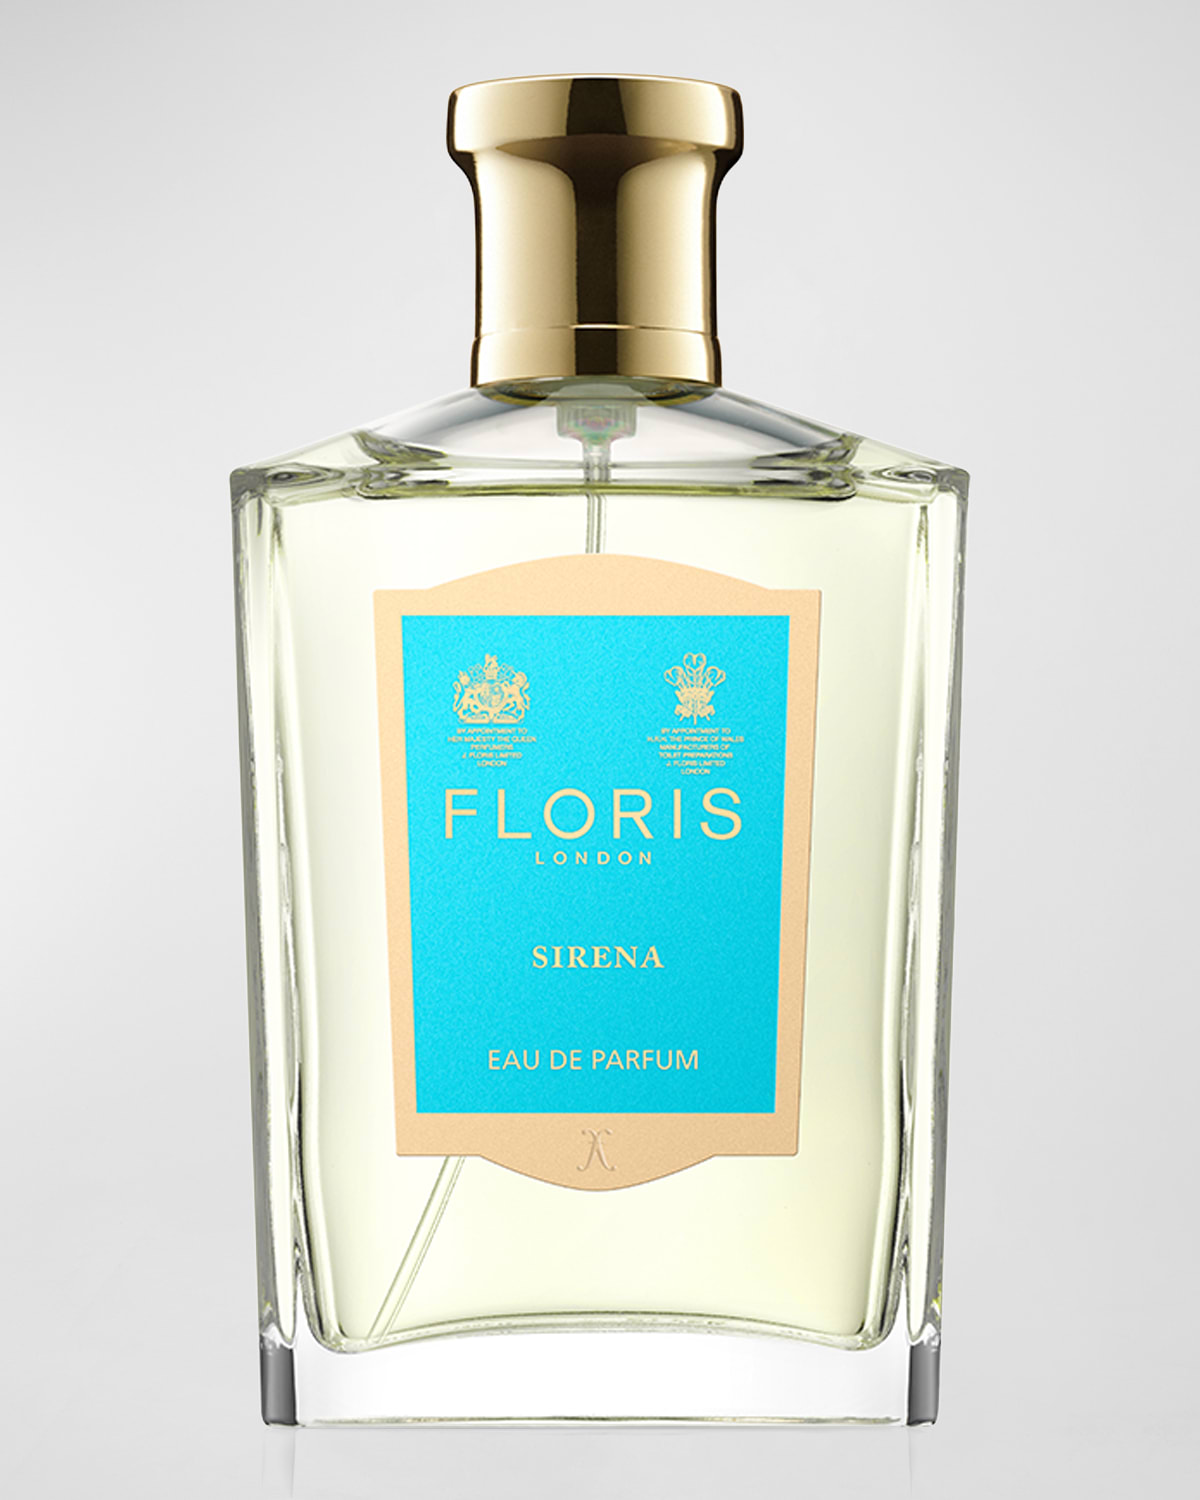 Floris London Sirena Eau de Parfum, 3.4 oz.